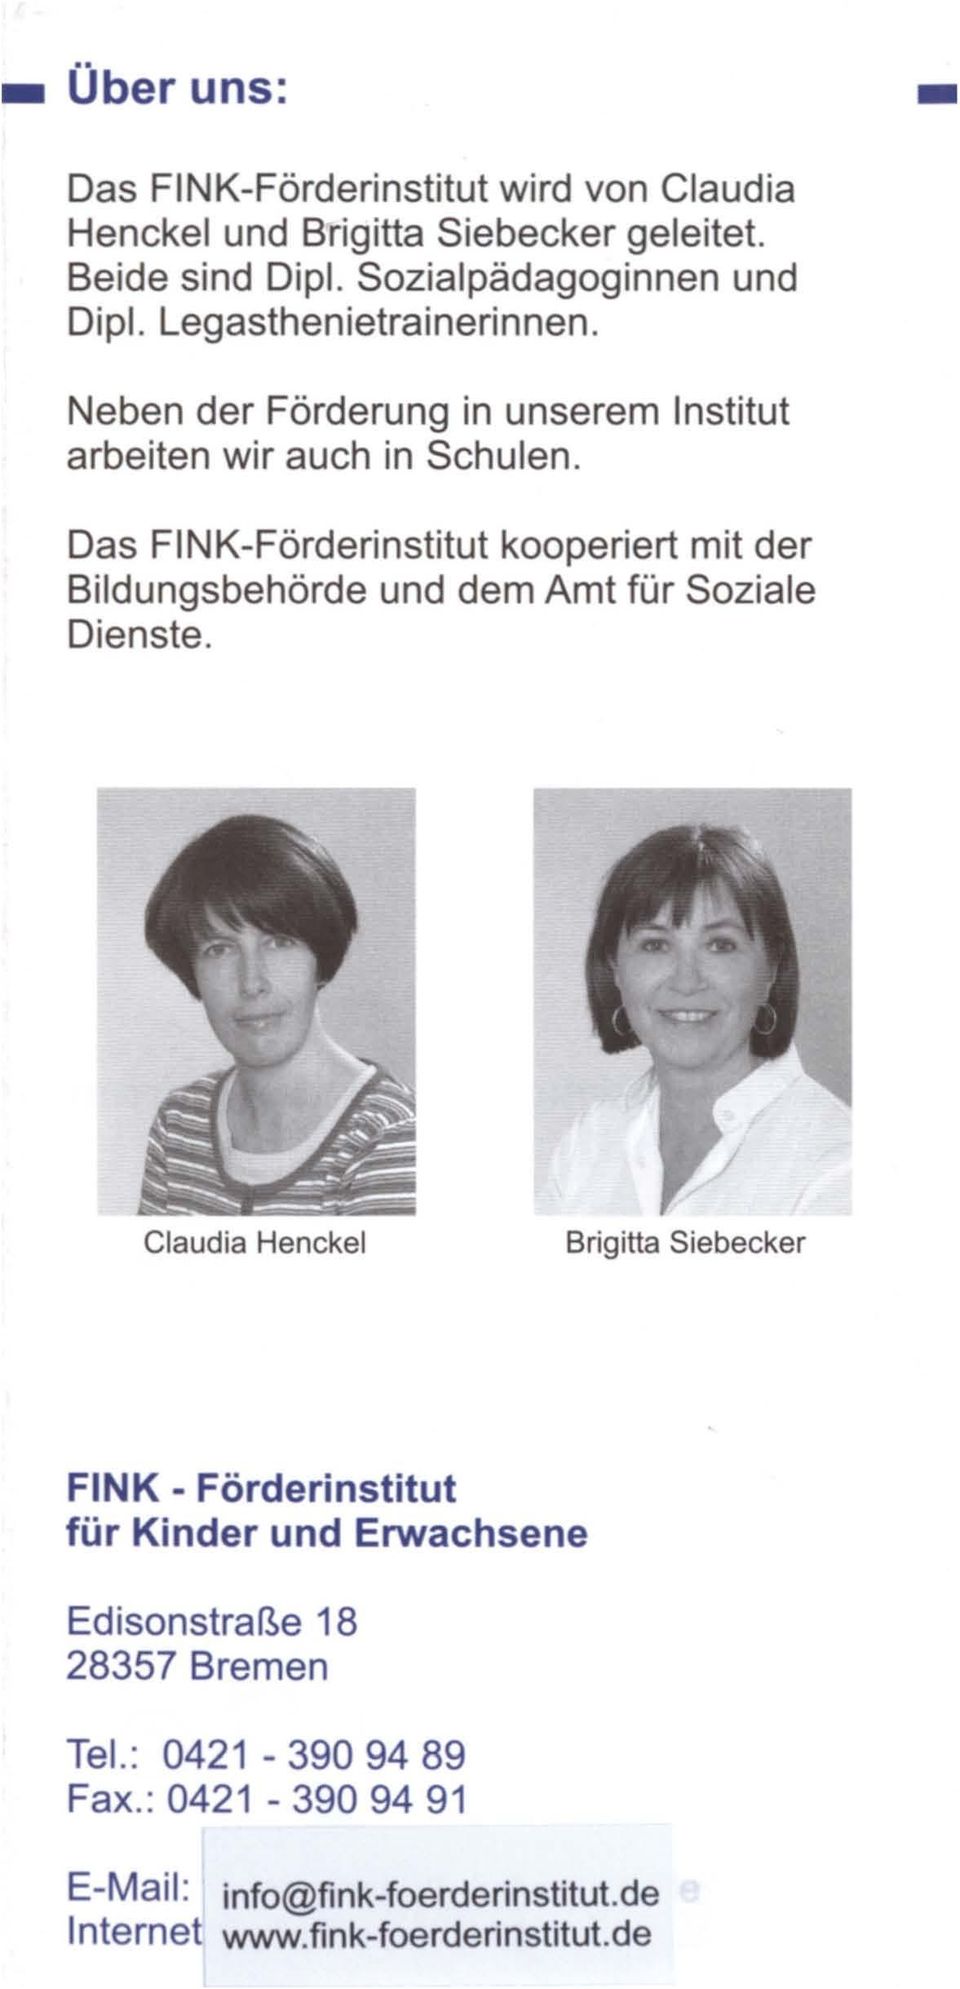 Das FINK-Förderinstitut kooperiert mit der Bildungsbehörde und dem Amt für Soziale Dienste.